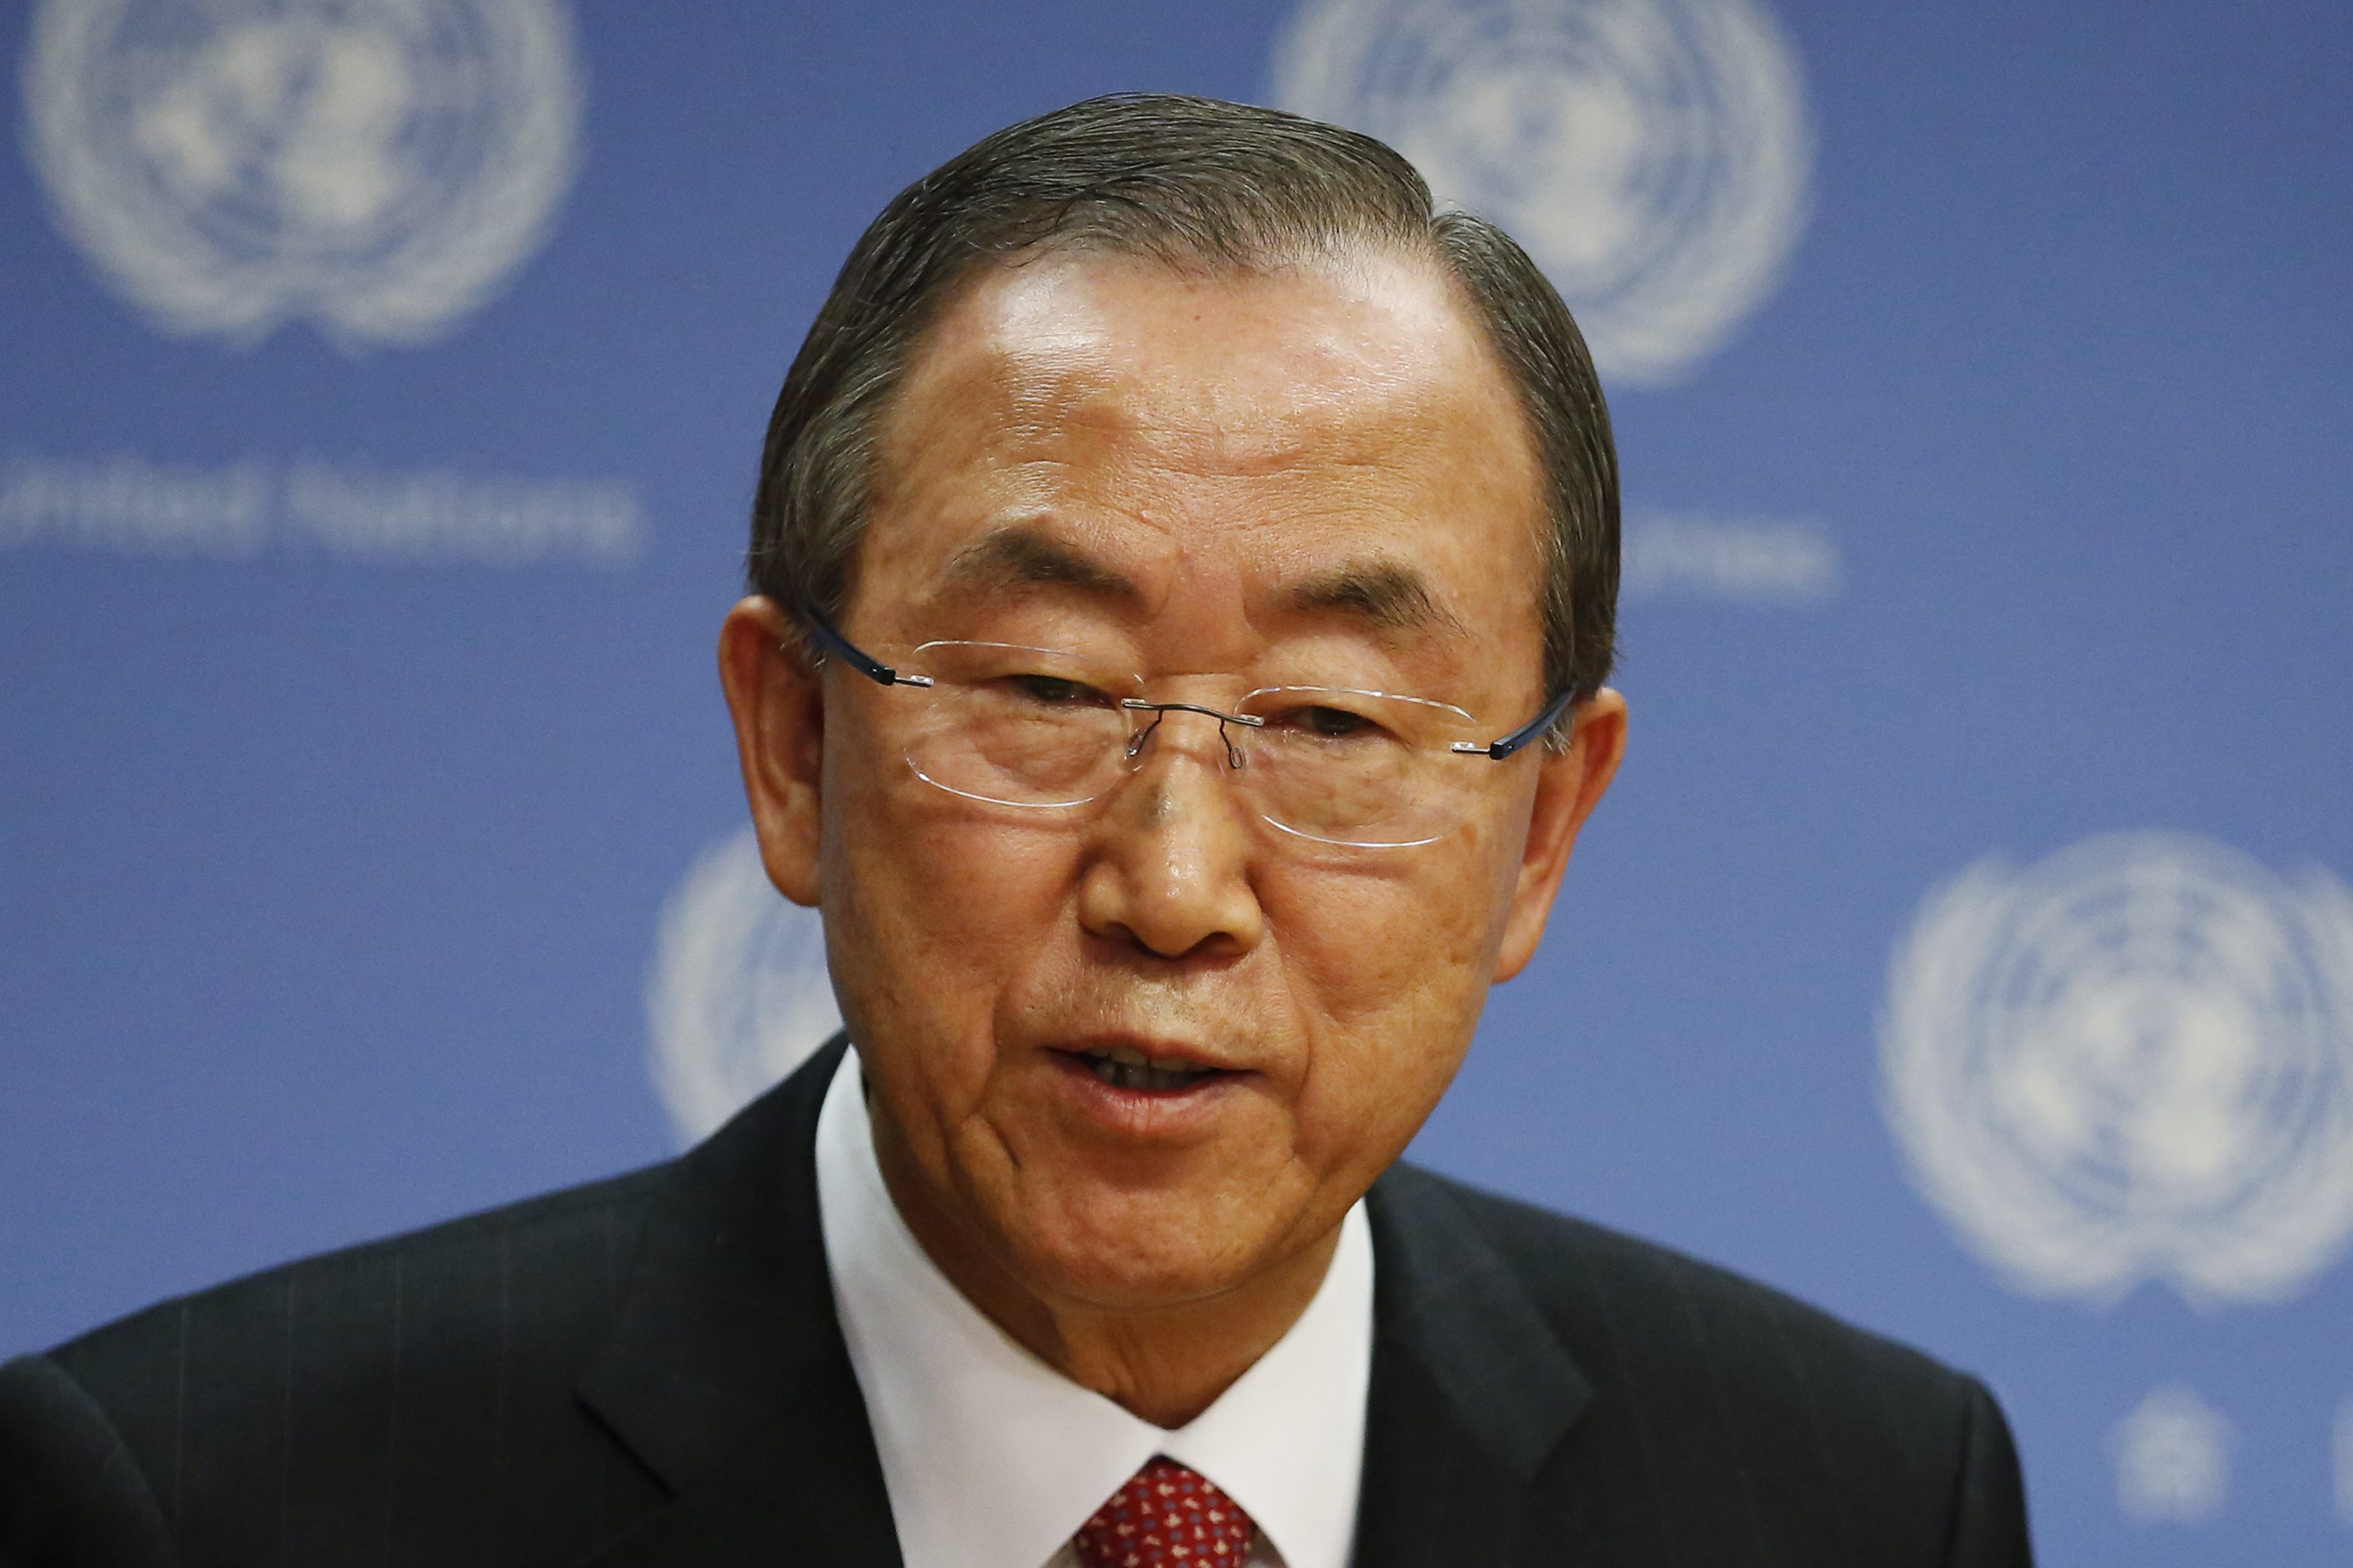 ONU presenta este lunes informe sobre uso de armas químicas en Siria